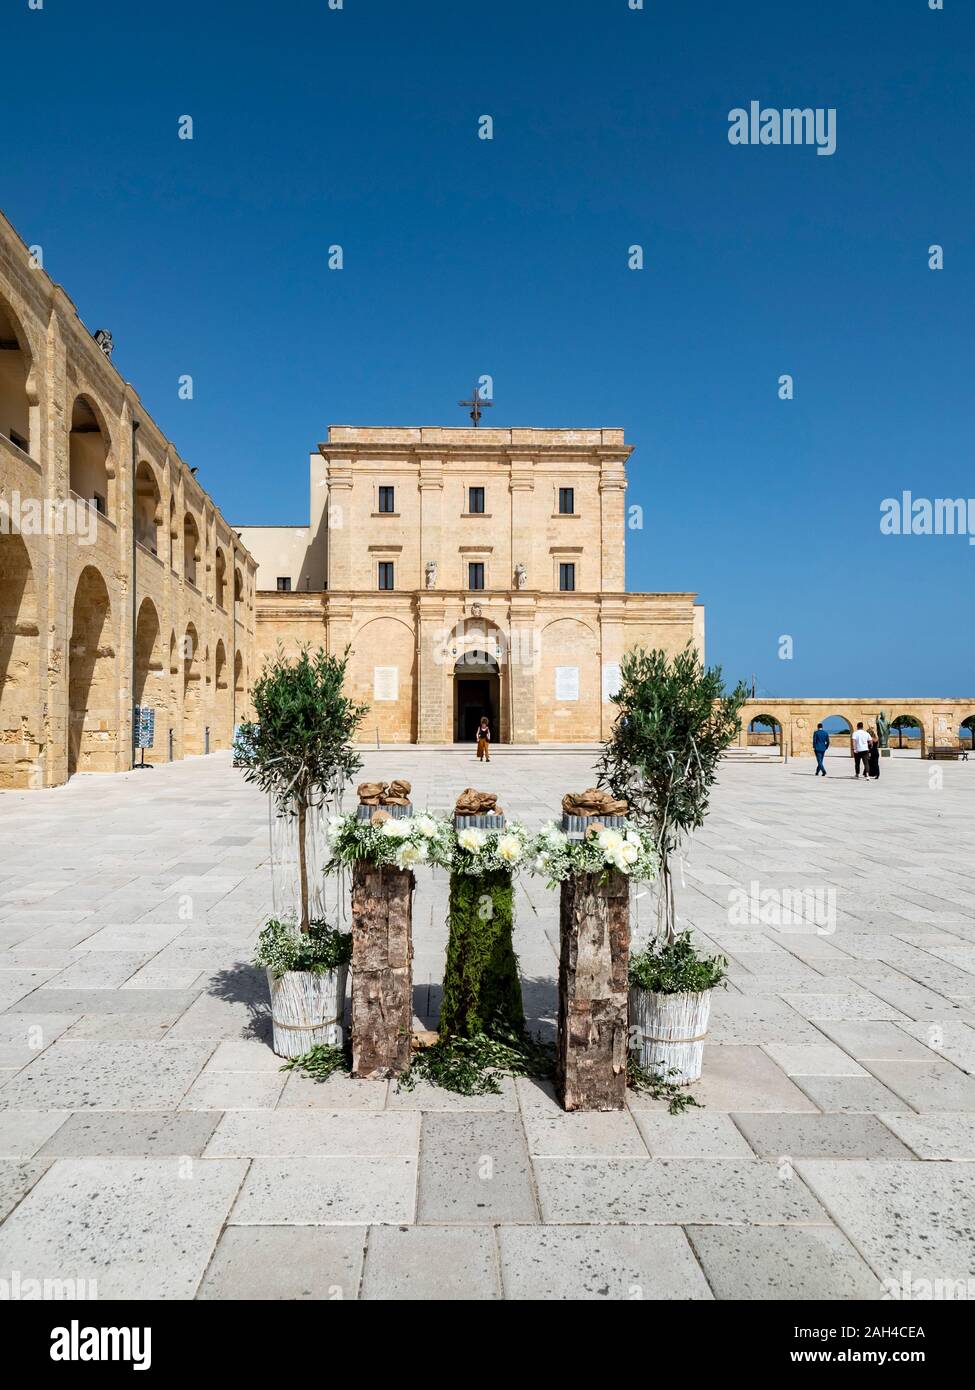 Italia, in provincia di Lecce e Santa Maria di Leuca, vasi di piante in piedi sulla piazza della Basilica Santuario di Santa Maria de finibus terrae Foto Stock